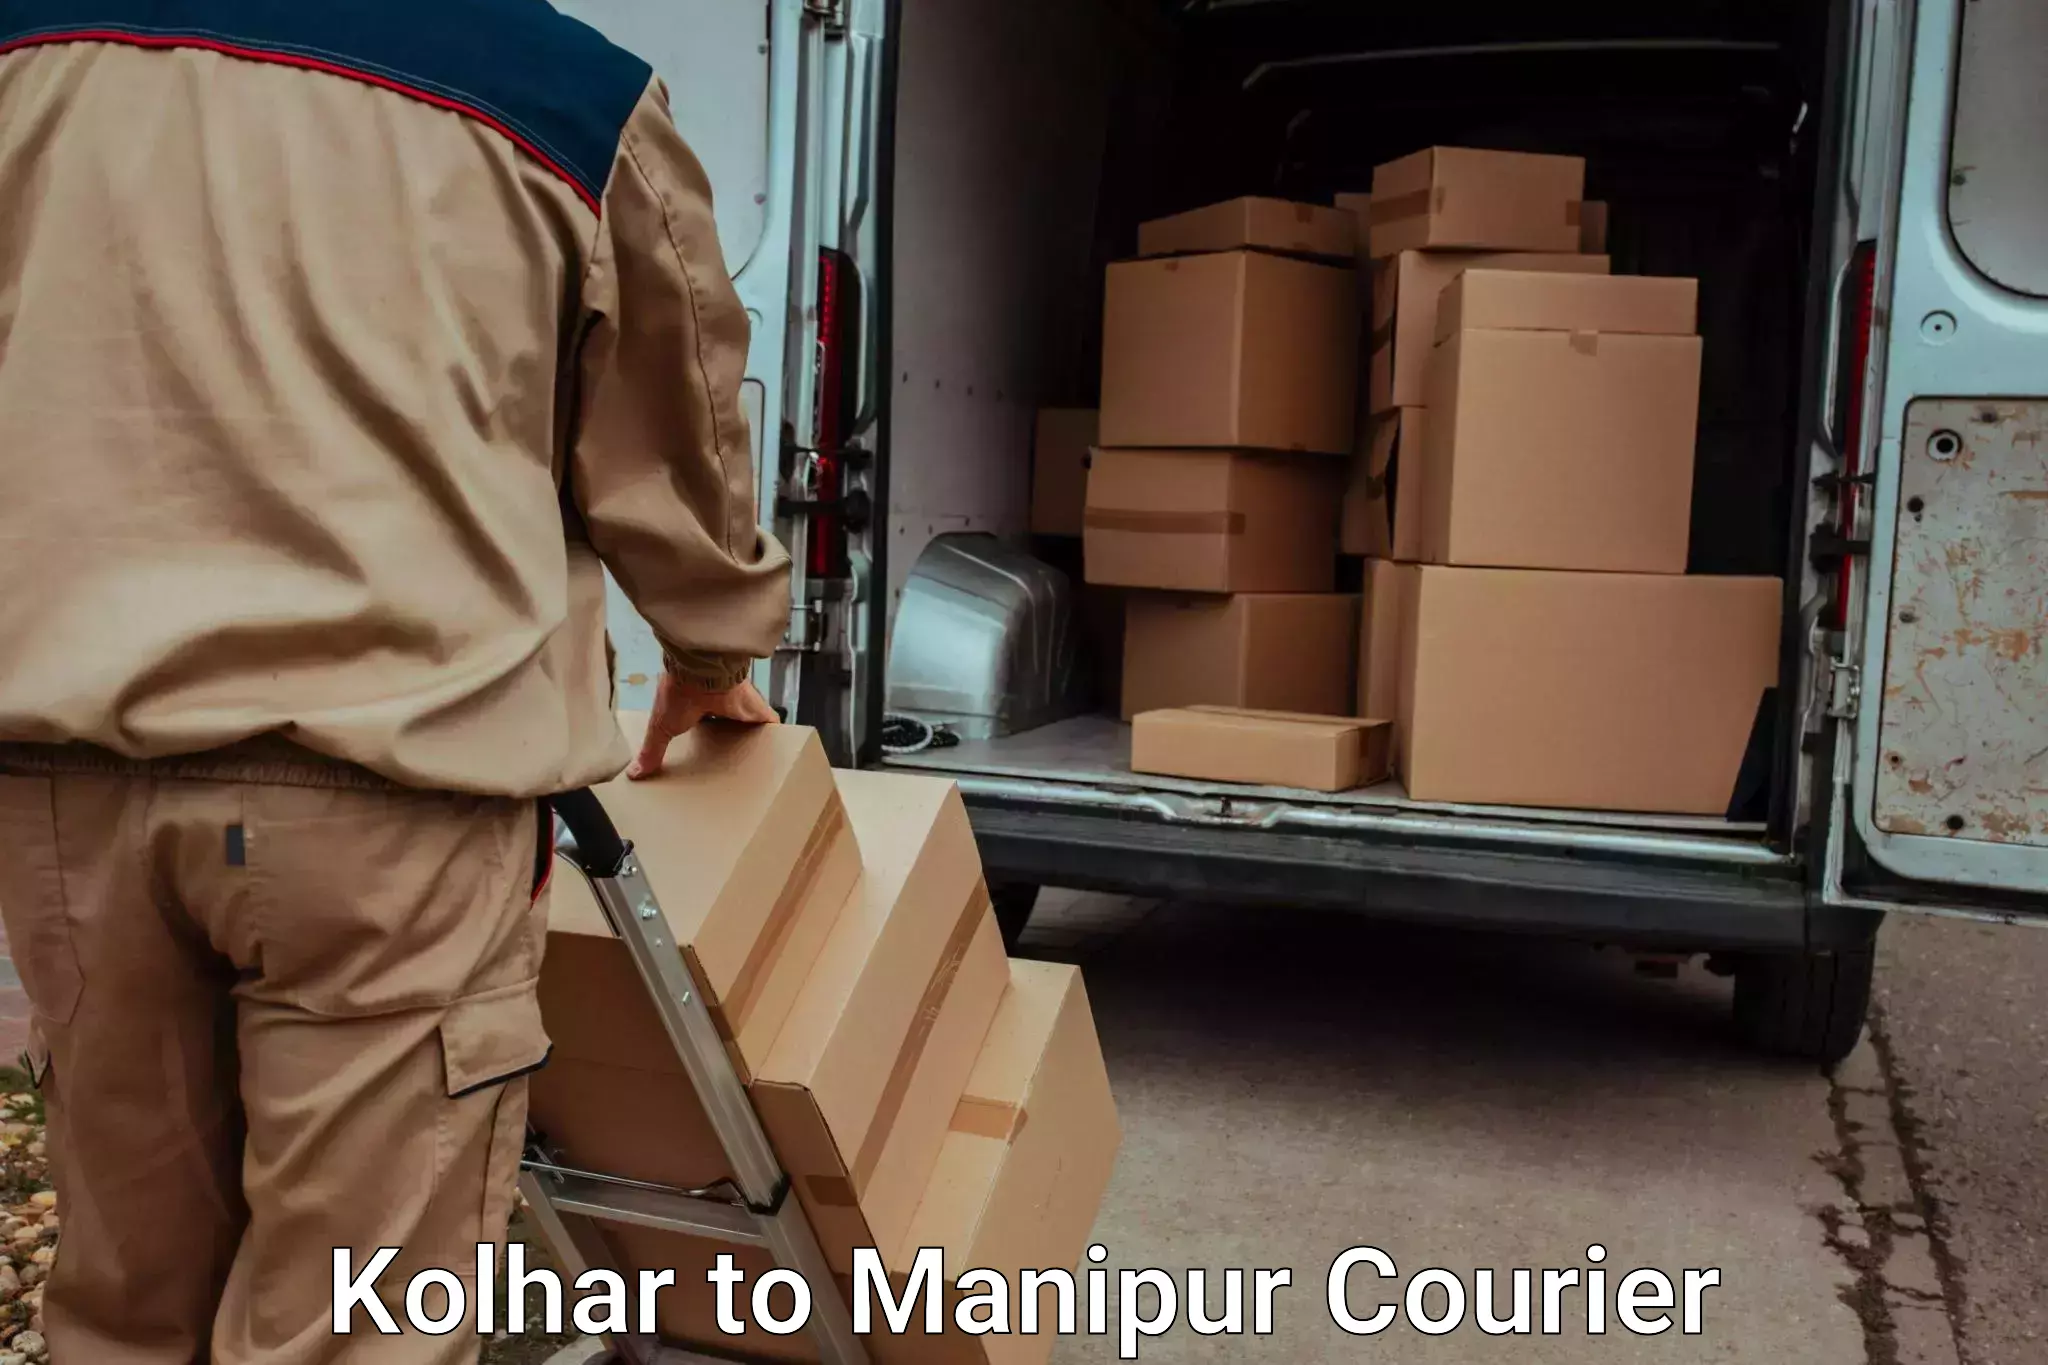 Furniture transport service in Kolhar to Chandel